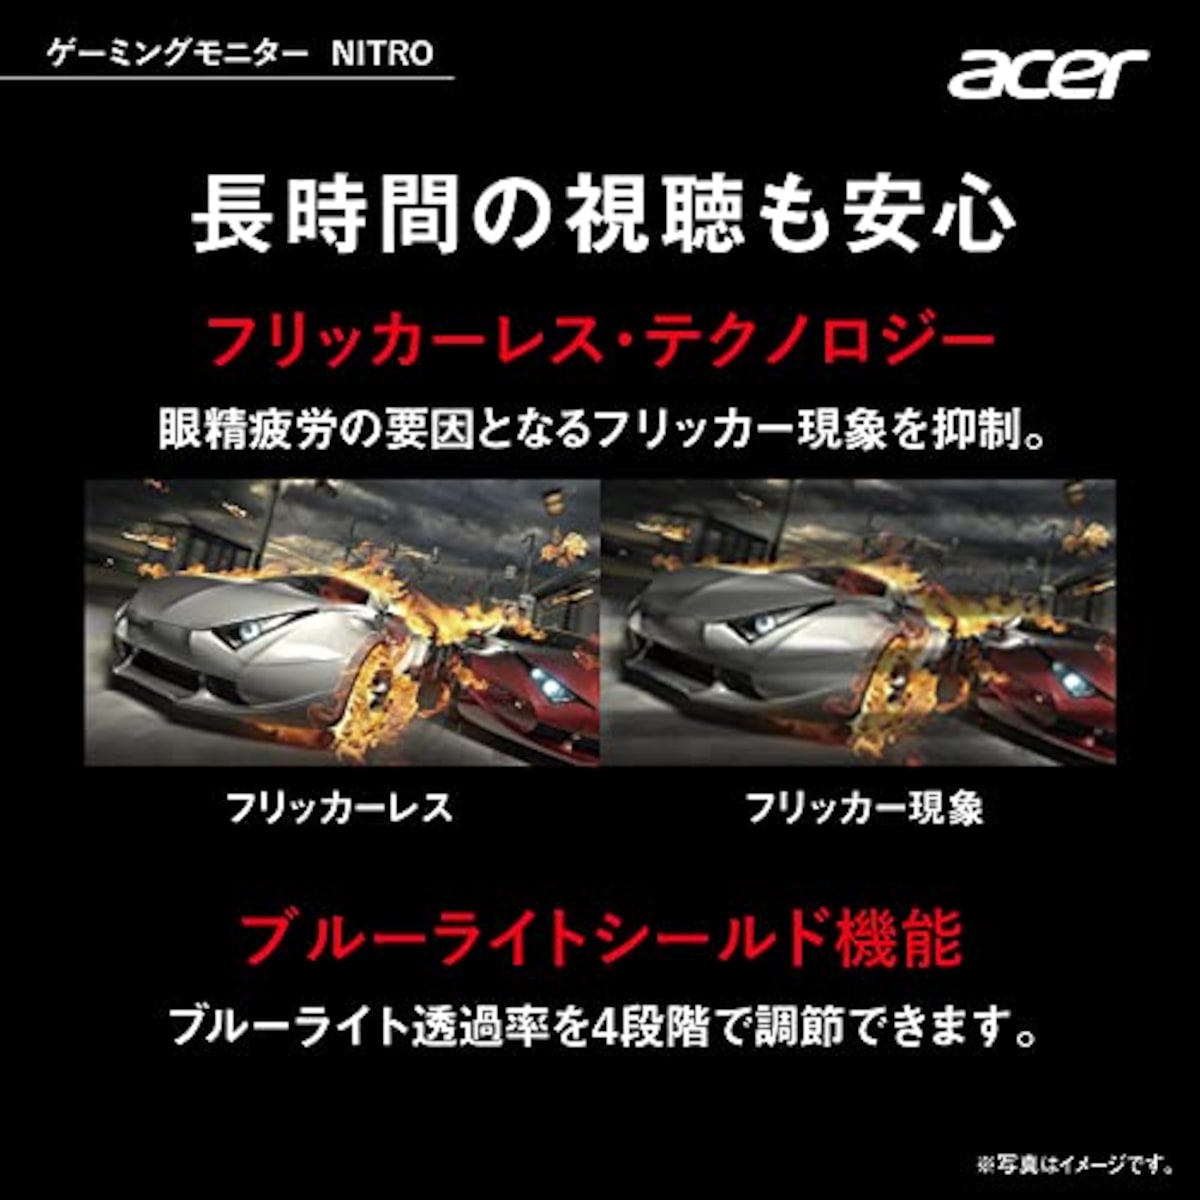  日本エイサー 【Amazon.co.jp限定】 Acer ゲーミングモニター Nitro QG241YEbmiix 23.8インチ IPS 非光沢 フルHD 100Hz 1ms(VRB) HDMI ミニD-Sub15 VESAマウント対応 スピーカー内蔵 ヘッドホン端子 AMD FreeSync画像5 